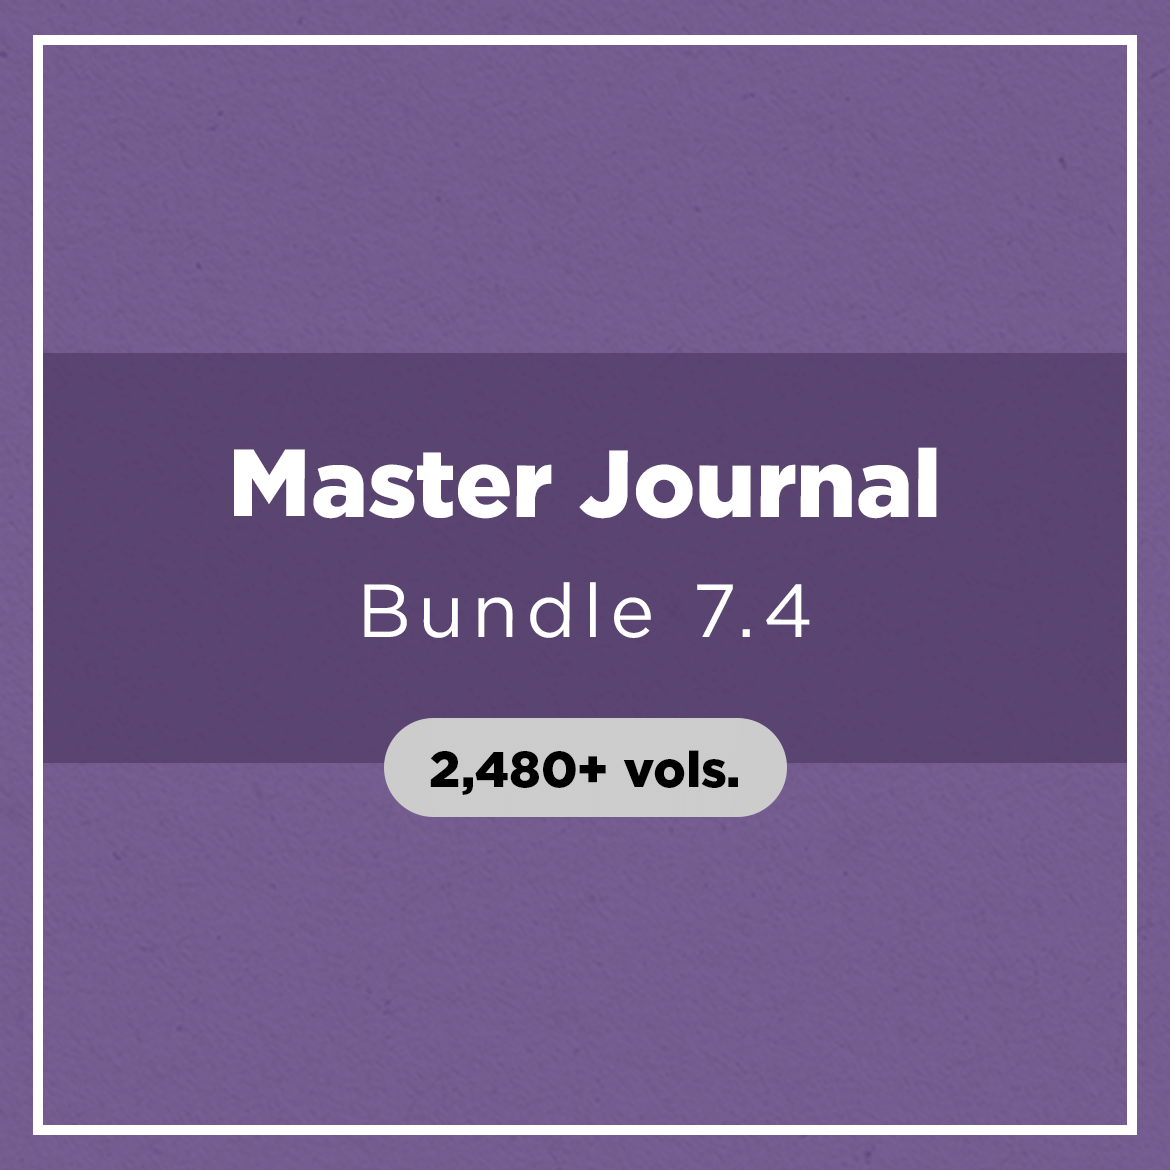 Master Journal Bundle 7.4 (2,480+ vols.)